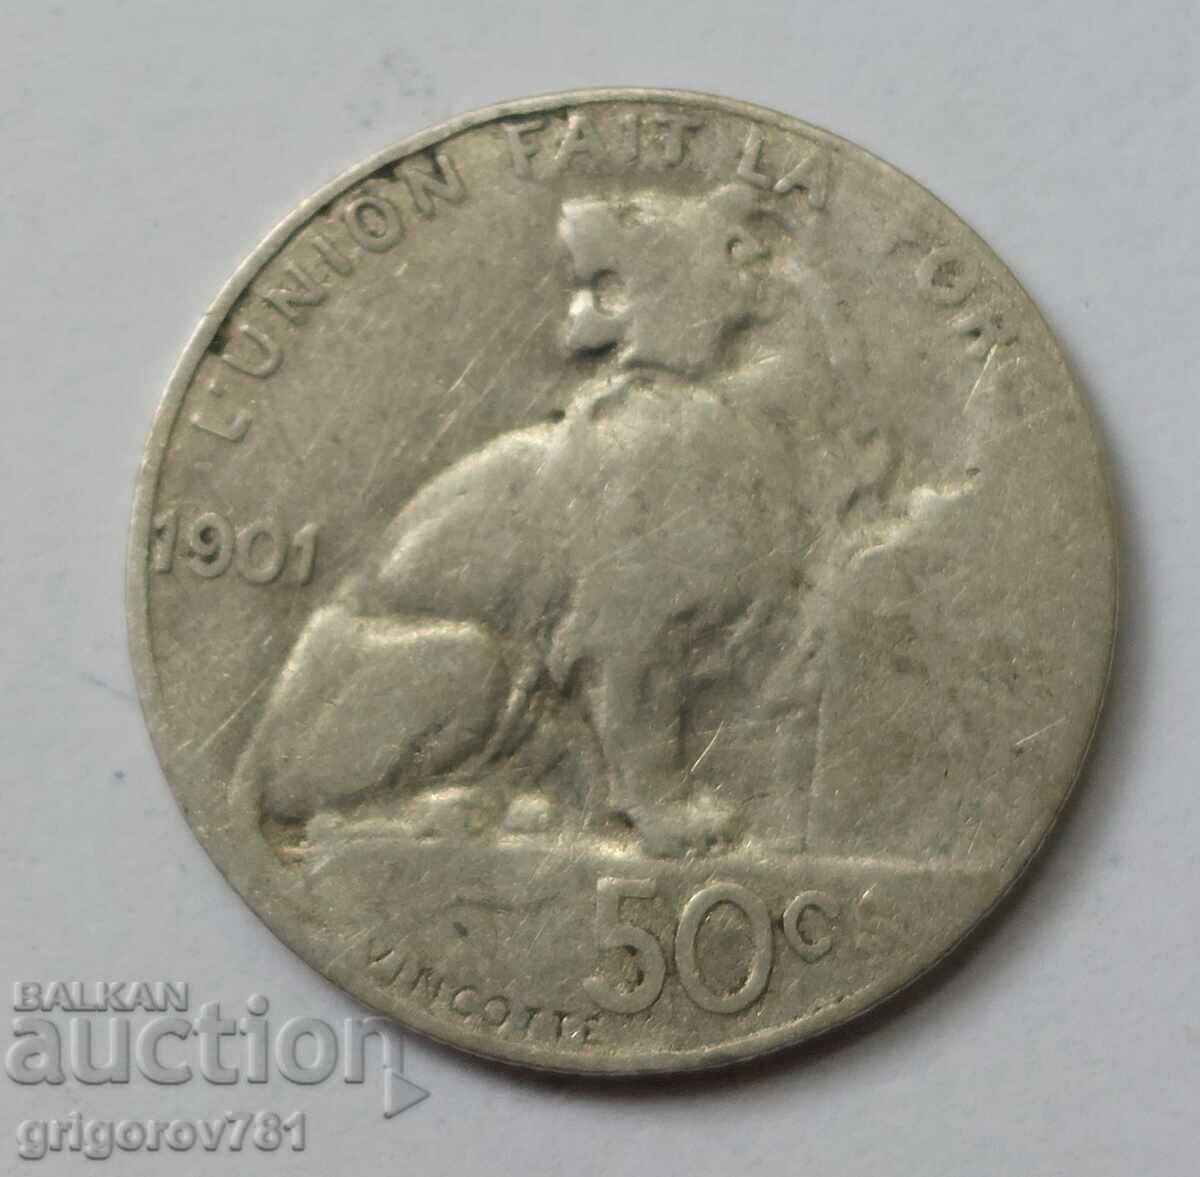 Ασημένιο 50 cm Βέλγιο 1901 - ασημένιο νόμισμα #75